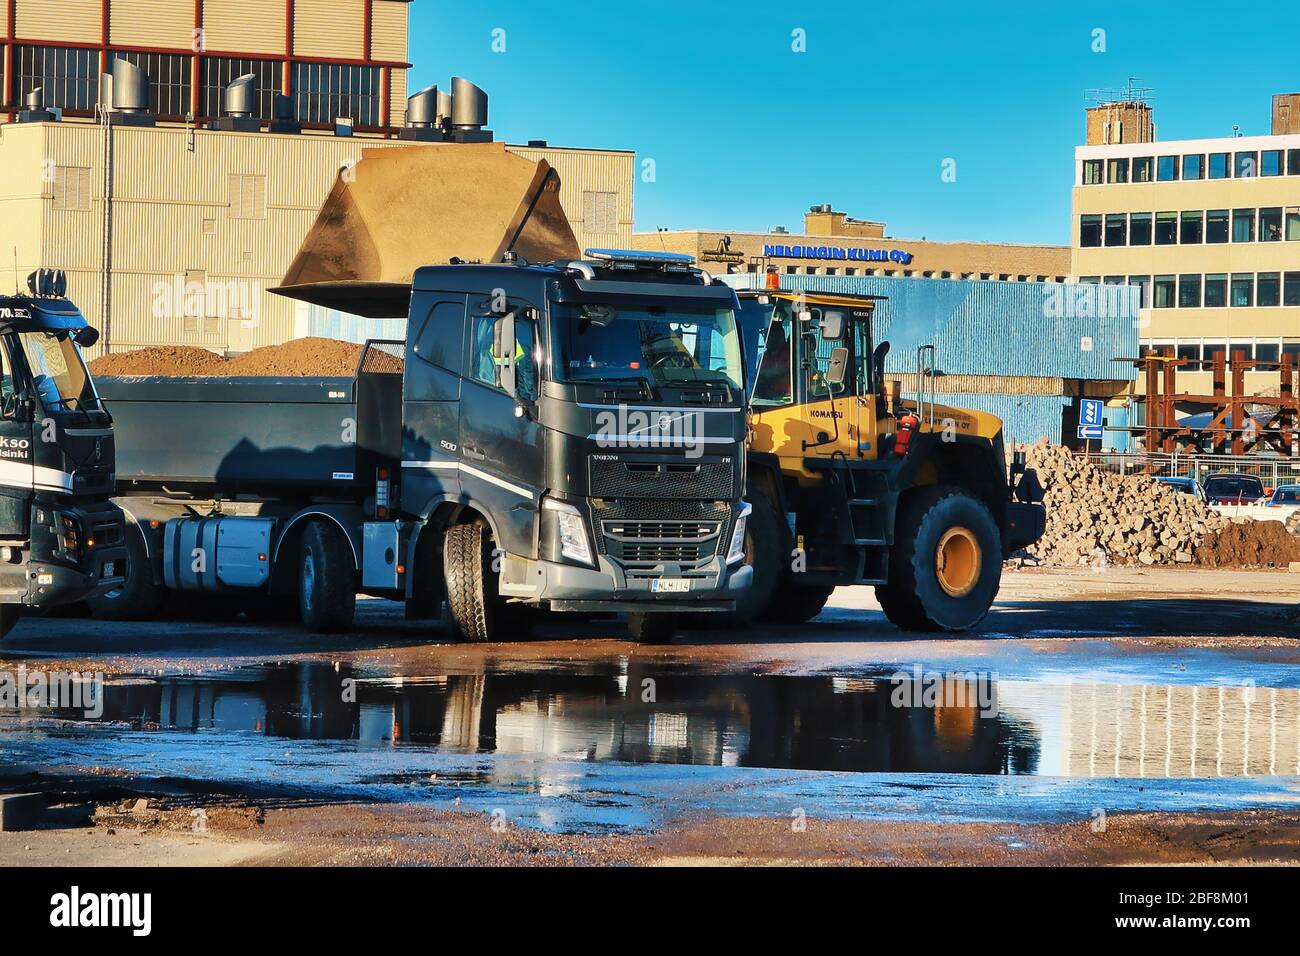 Chargeur sur roues Komatsu chargeant du gravier sur la remorque du camion-benne noir Volvo FH sur le chantier le jour ensoleillé. Helsinki, Finlande. 17 avril 2020 Banque D'Images